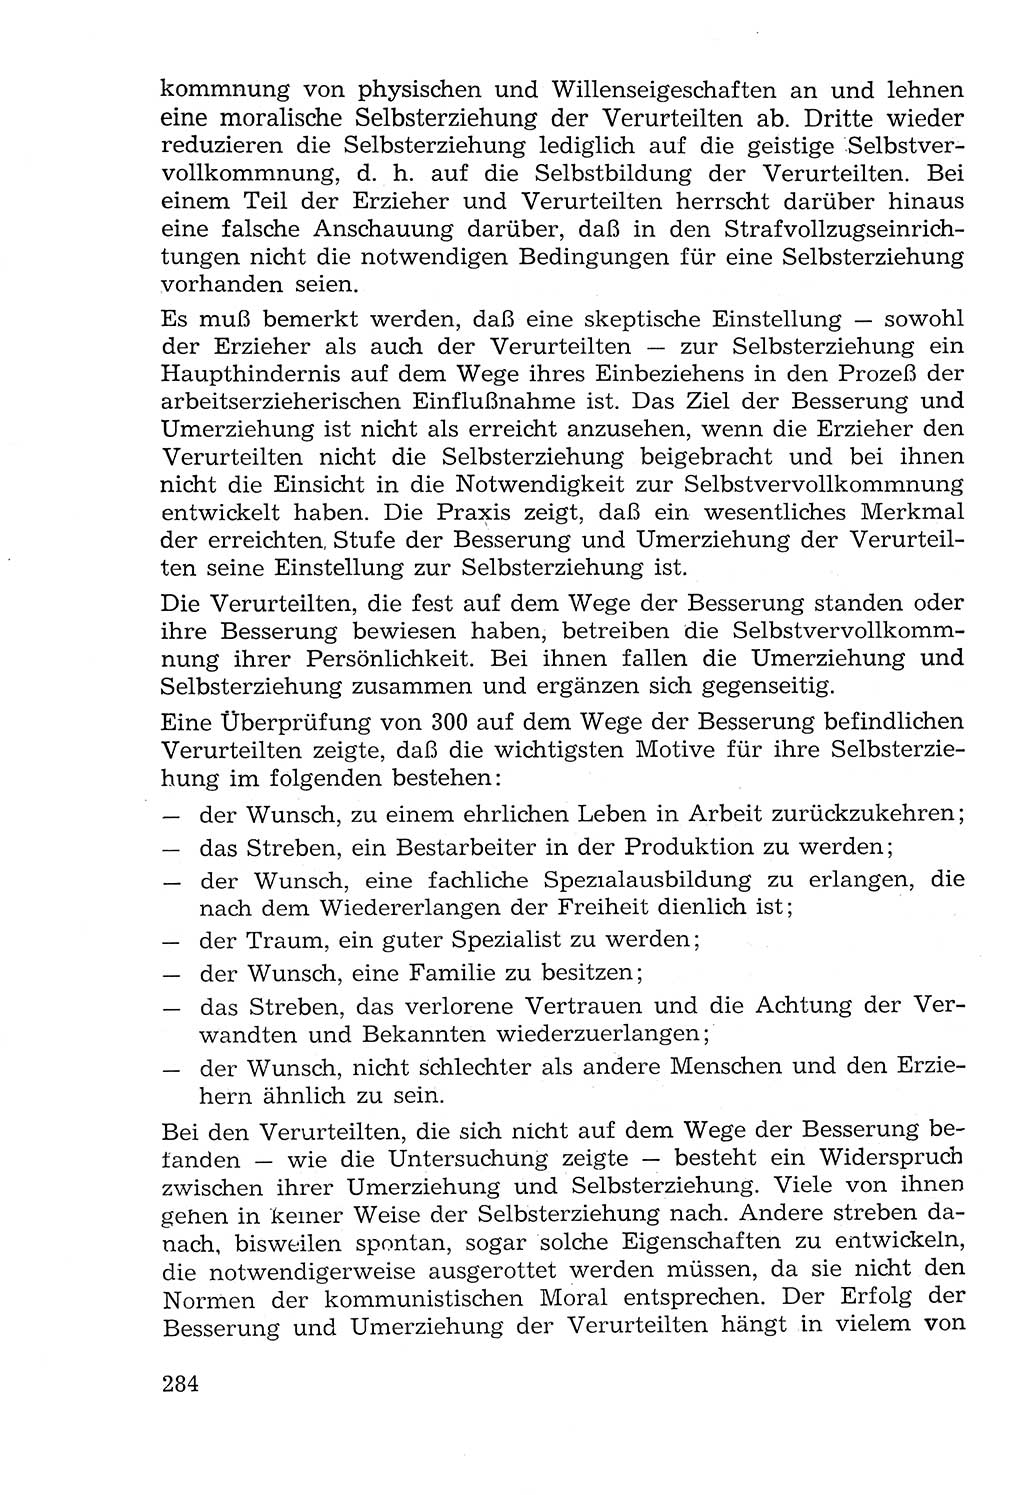 Lehrbuch der Strafvollzugspädagogik [Deutsche Demokratische Republik (DDR)] 1969, Seite 284 (Lb. SV-Pd. DDR 1969, S. 284)